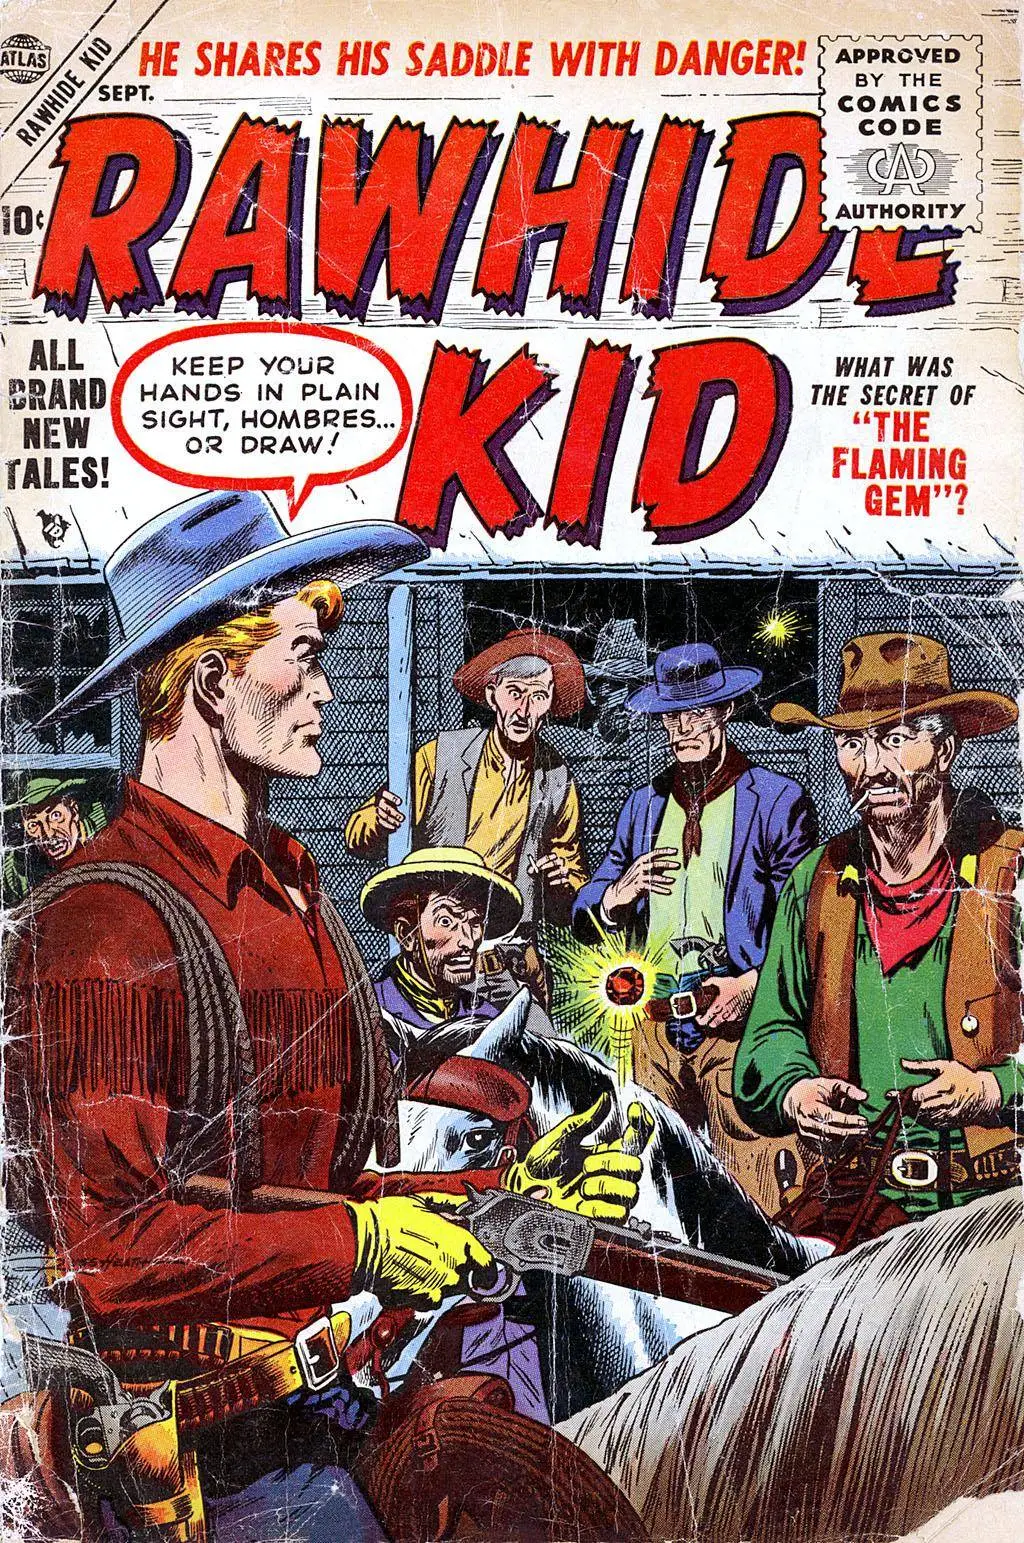 Rawhide Kid v1 004 1955 Pmack